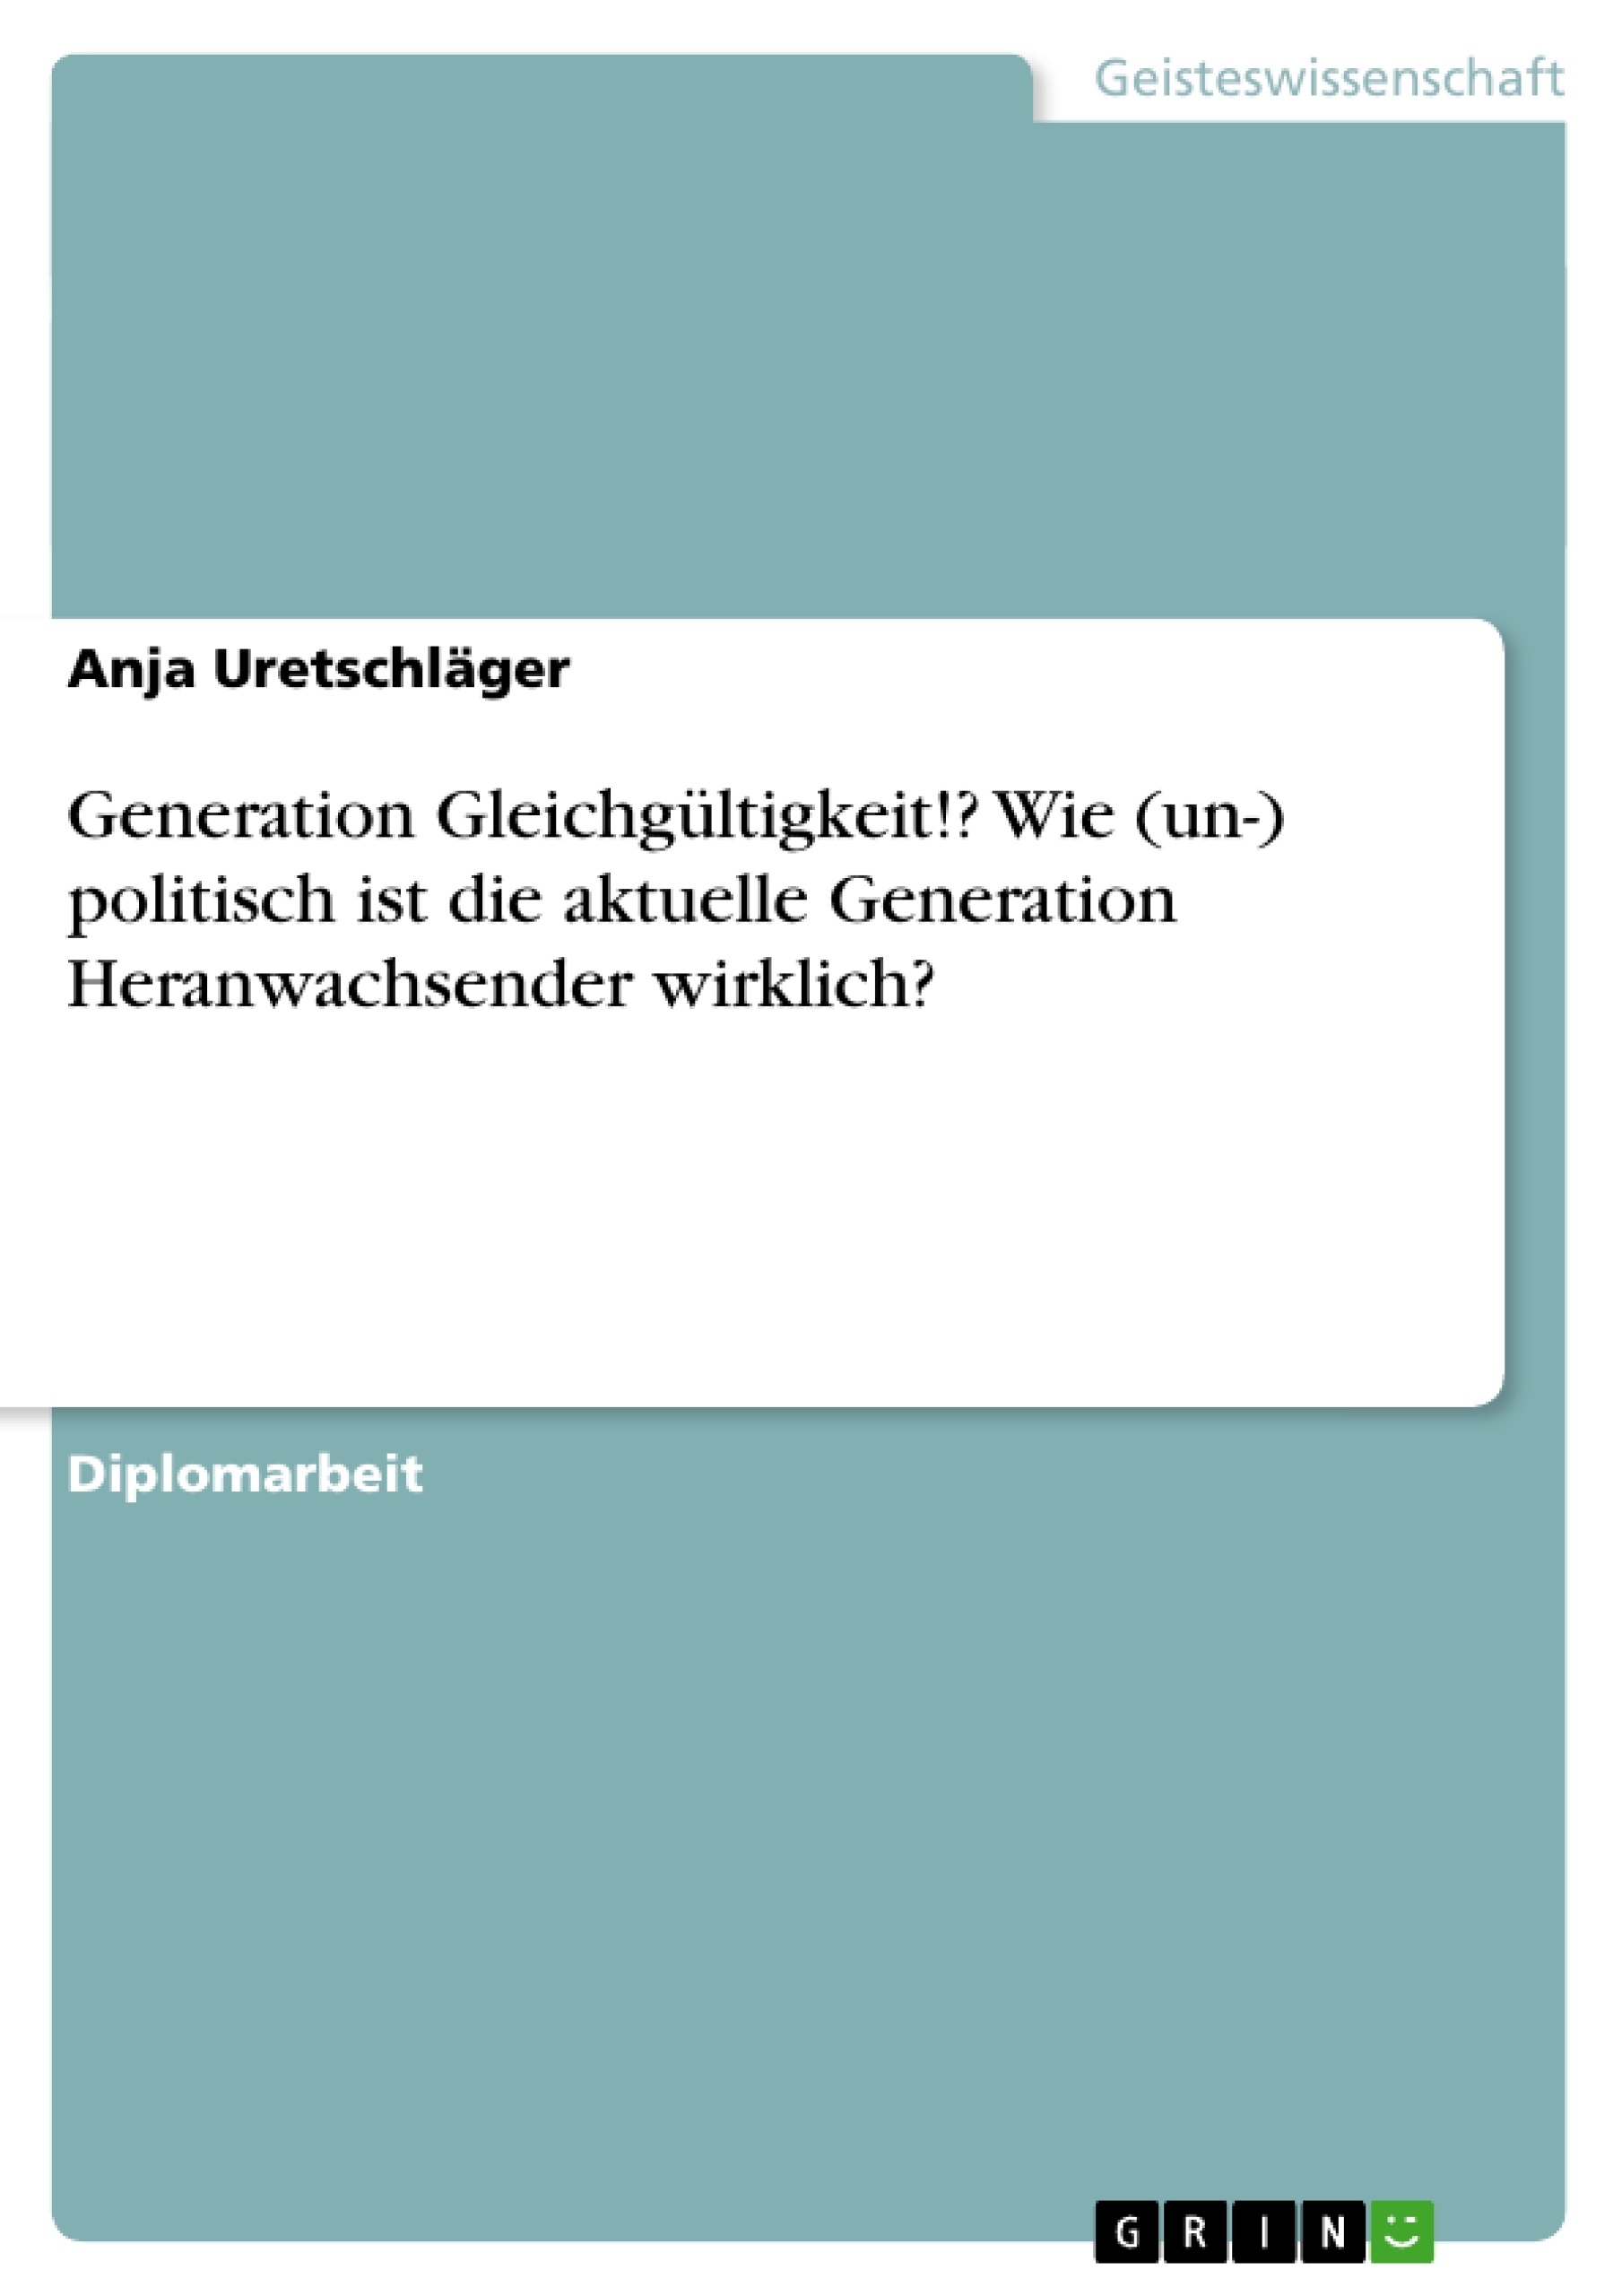 Title: Generation Gleichgültigkeit!? Wie (un-) politisch ist die aktuelle Generation Heranwachsender wirklich?